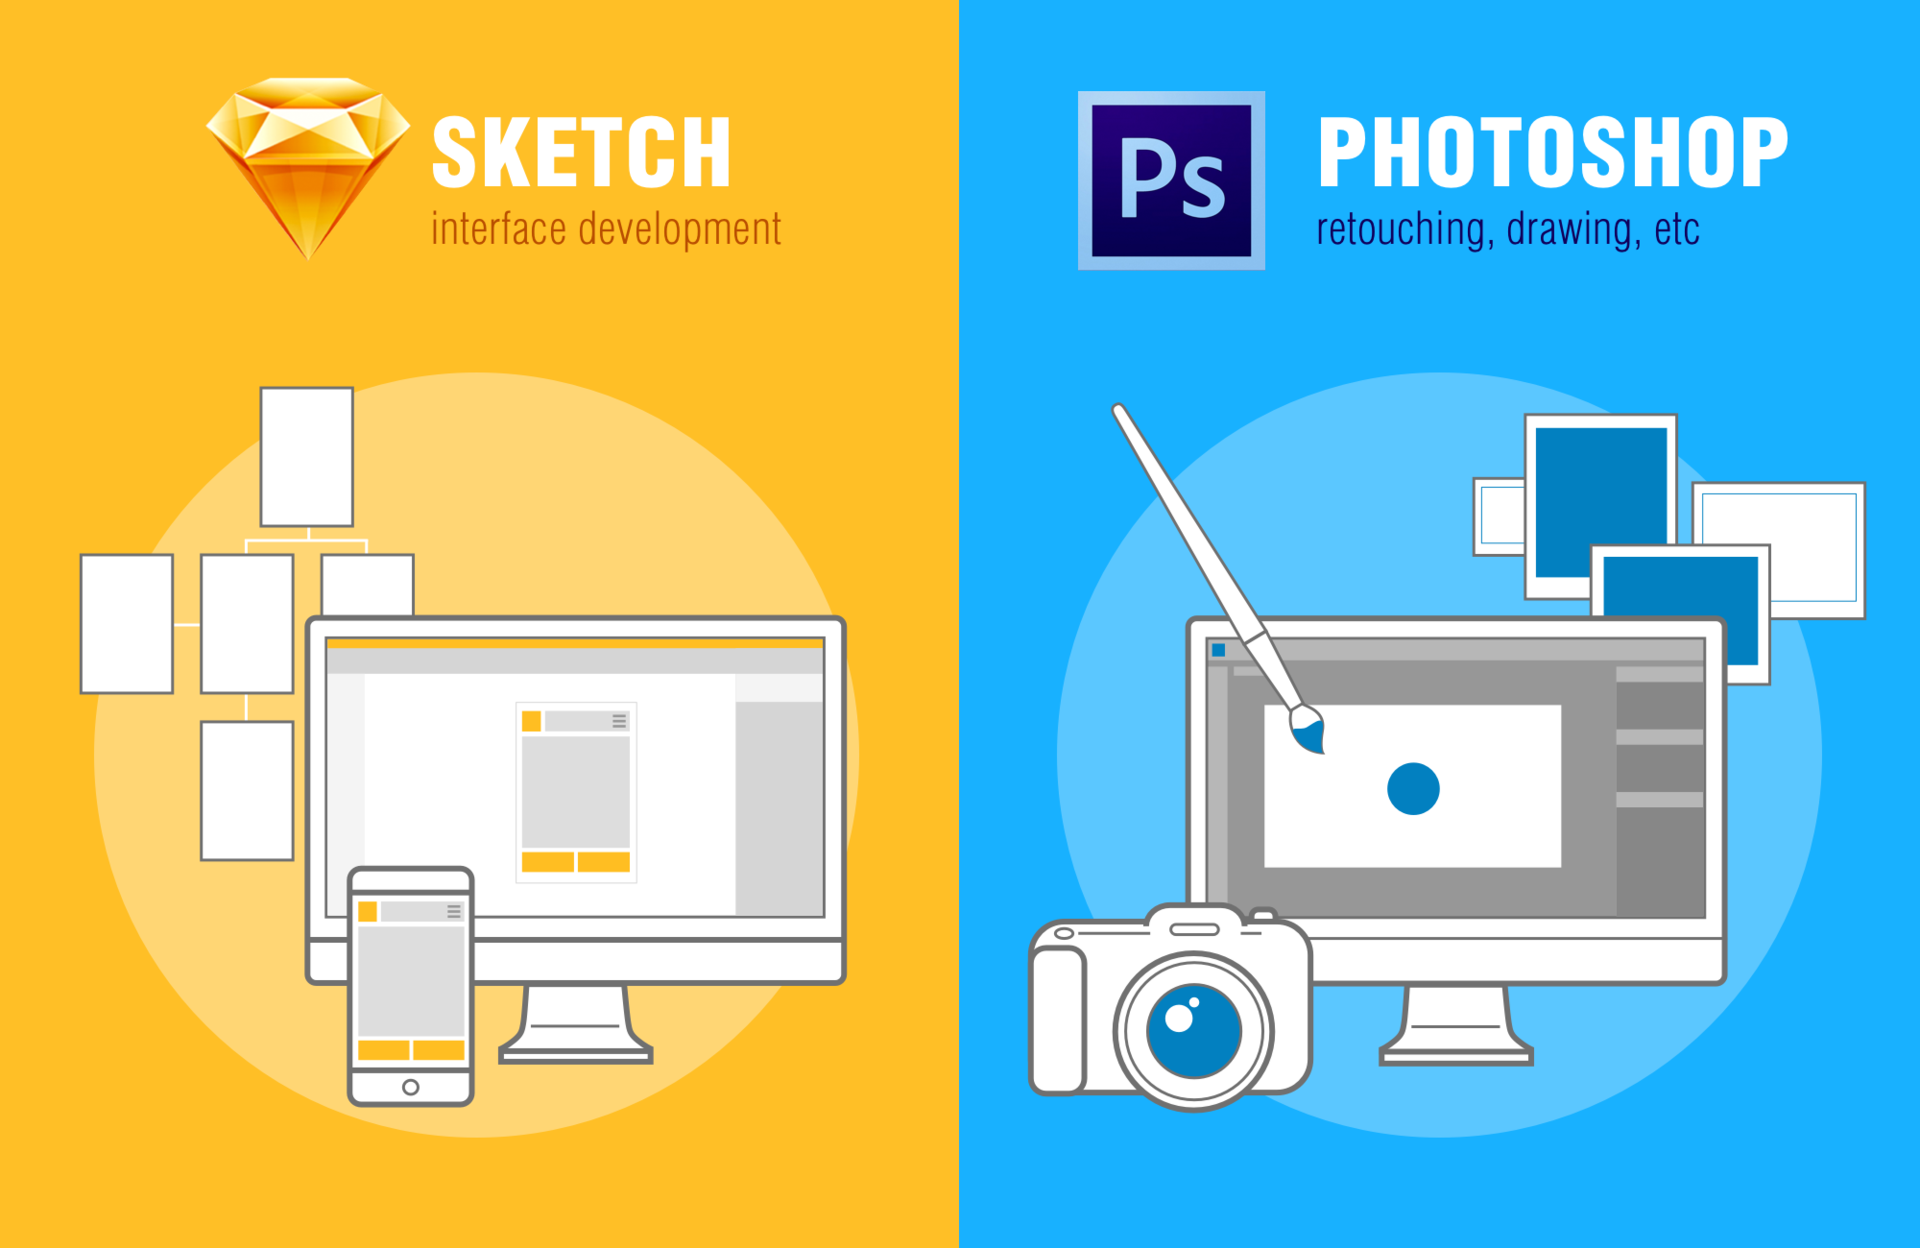 Photoshop, Sketch инструментарий UI-UX-дизайнеров: что выбрать для разработки интерфейсов? - 2